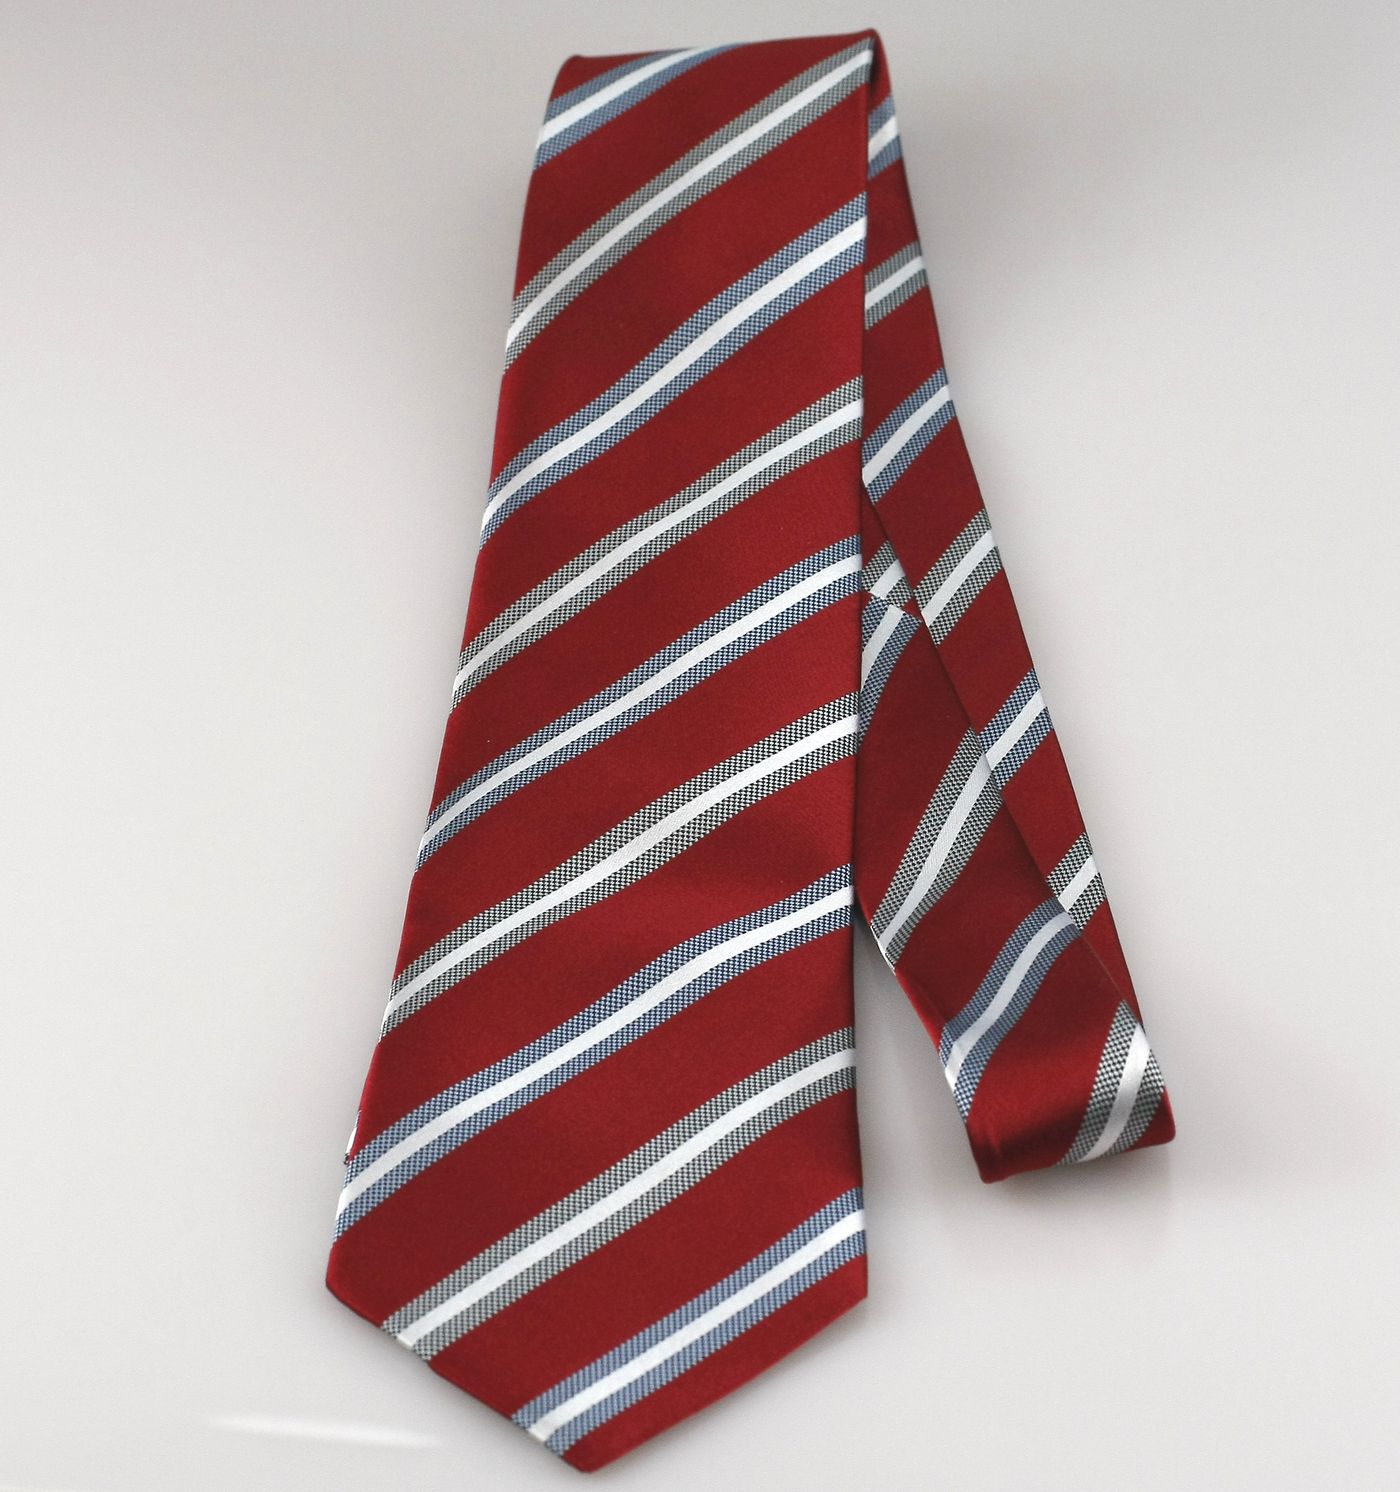 Hedvábná kravata Giori Milano RS0804, červeno-bílá